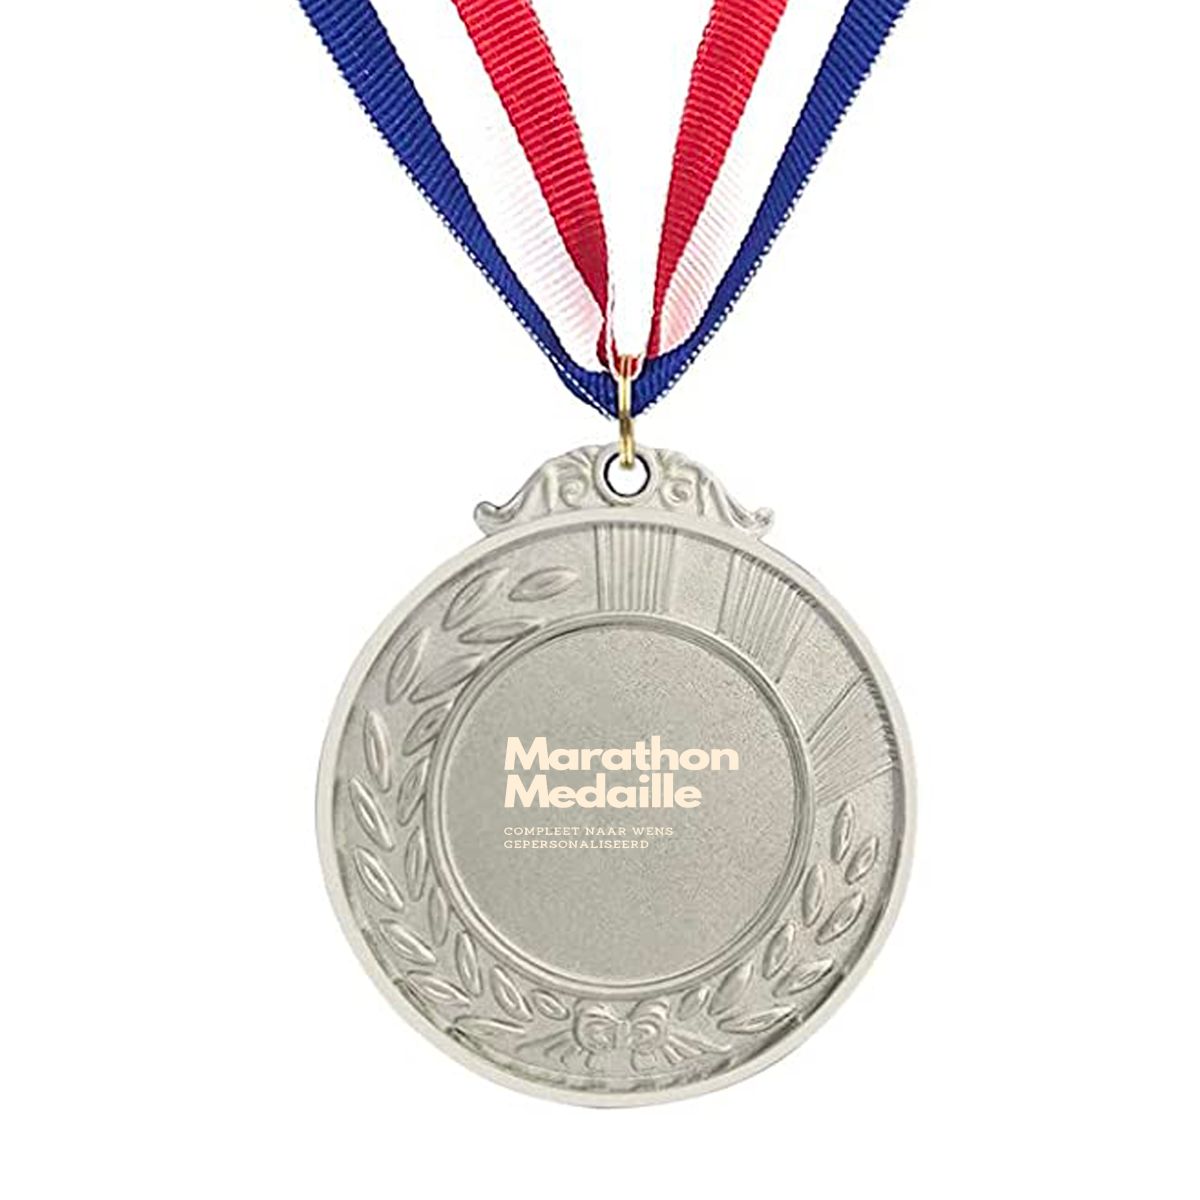 4 daagse medailles - marathon medailles gepersonaliseerd - medaille 🥇🥈🥉